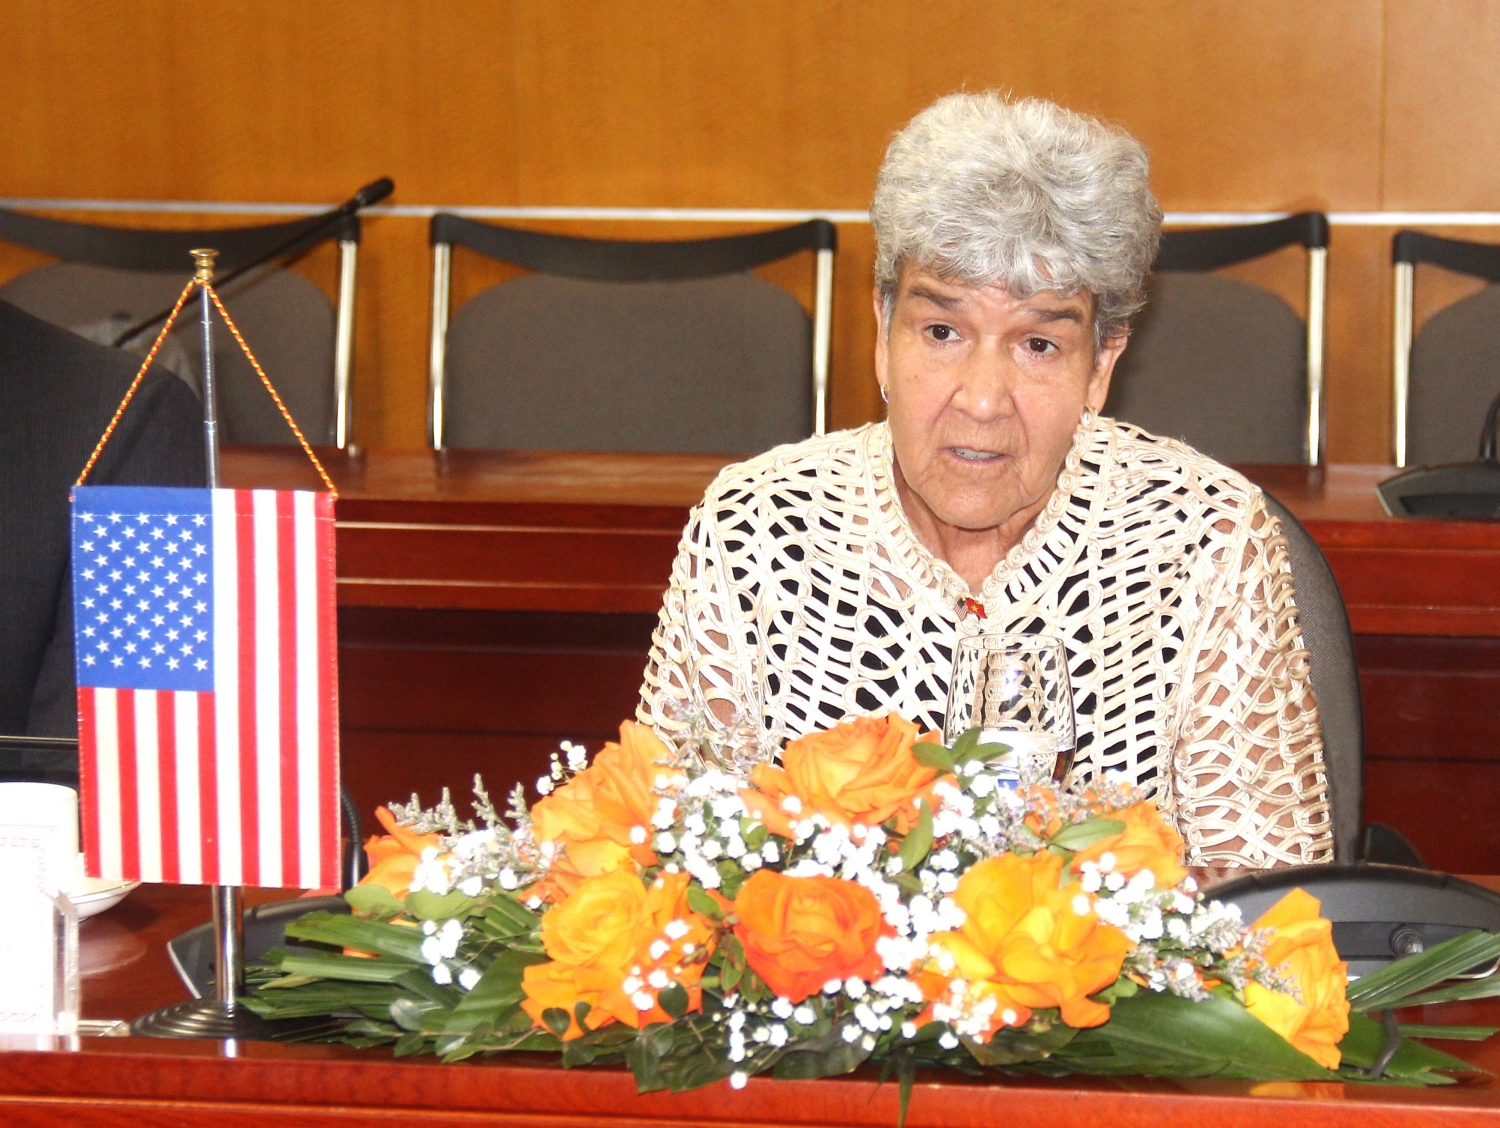 Hoa Kỳ là đối tác thương mại quan trọng của Việt Nam